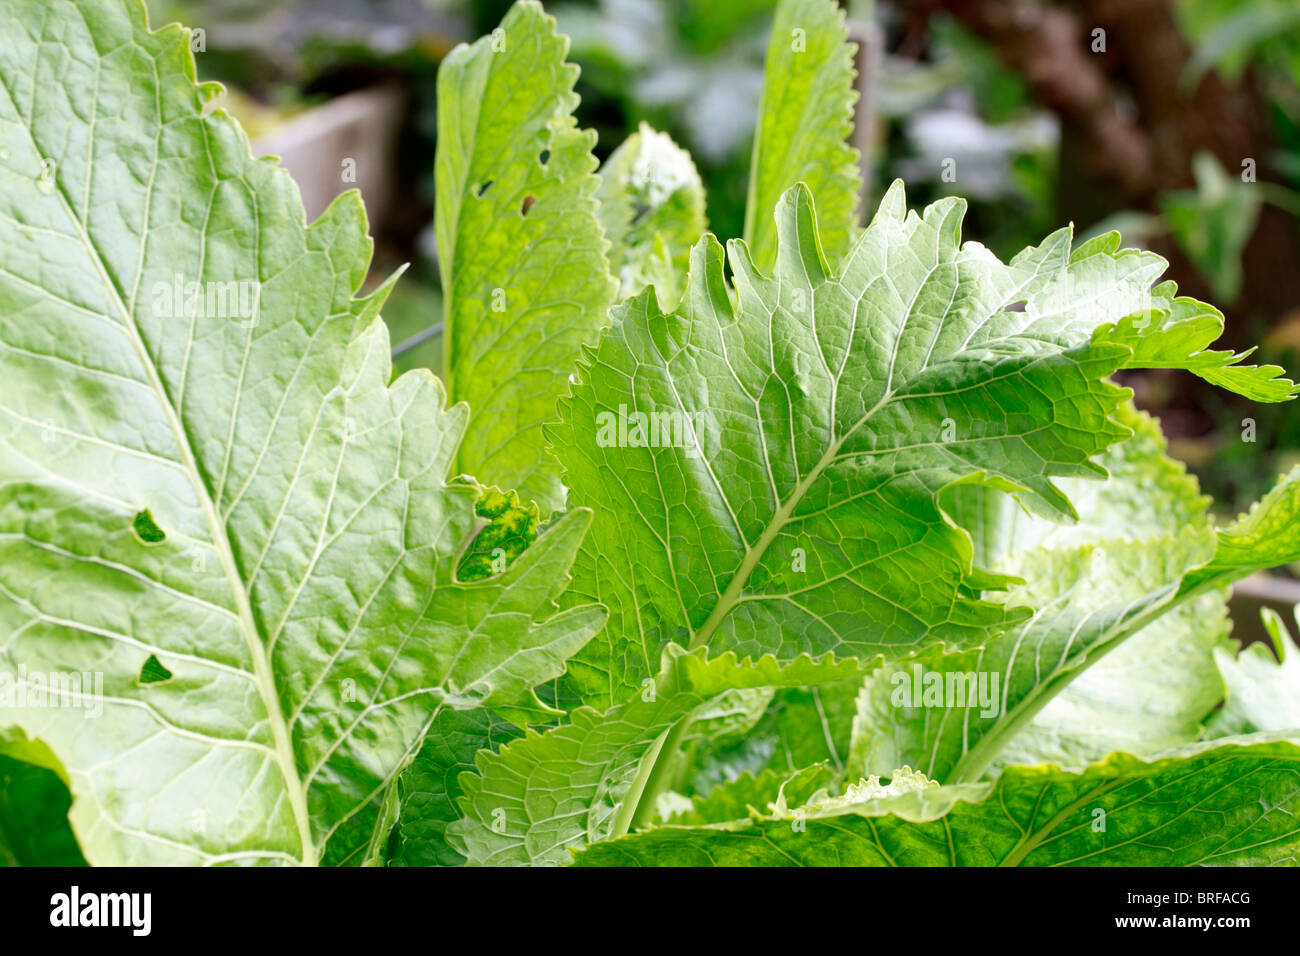 Il rafano, (Armoracia rusticana, syn. Cochlearia armoracia) è una pianta perenne della famiglia Brassicaceae. Coltivata per la sua radice che viene grattugiato, crema e servita con carni bovine. Foto Stock